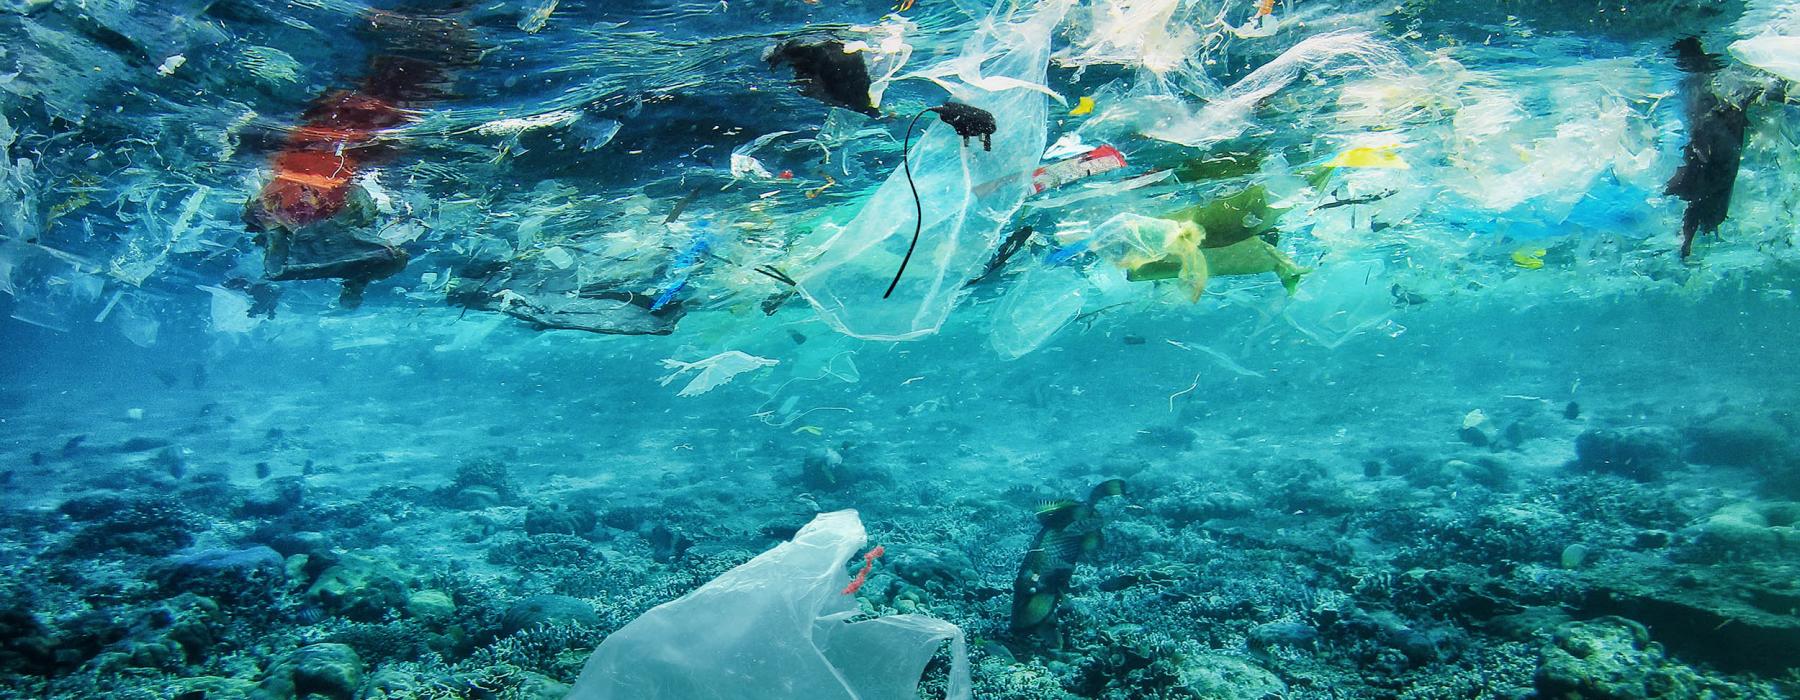 Plasticvervuiling op Bali